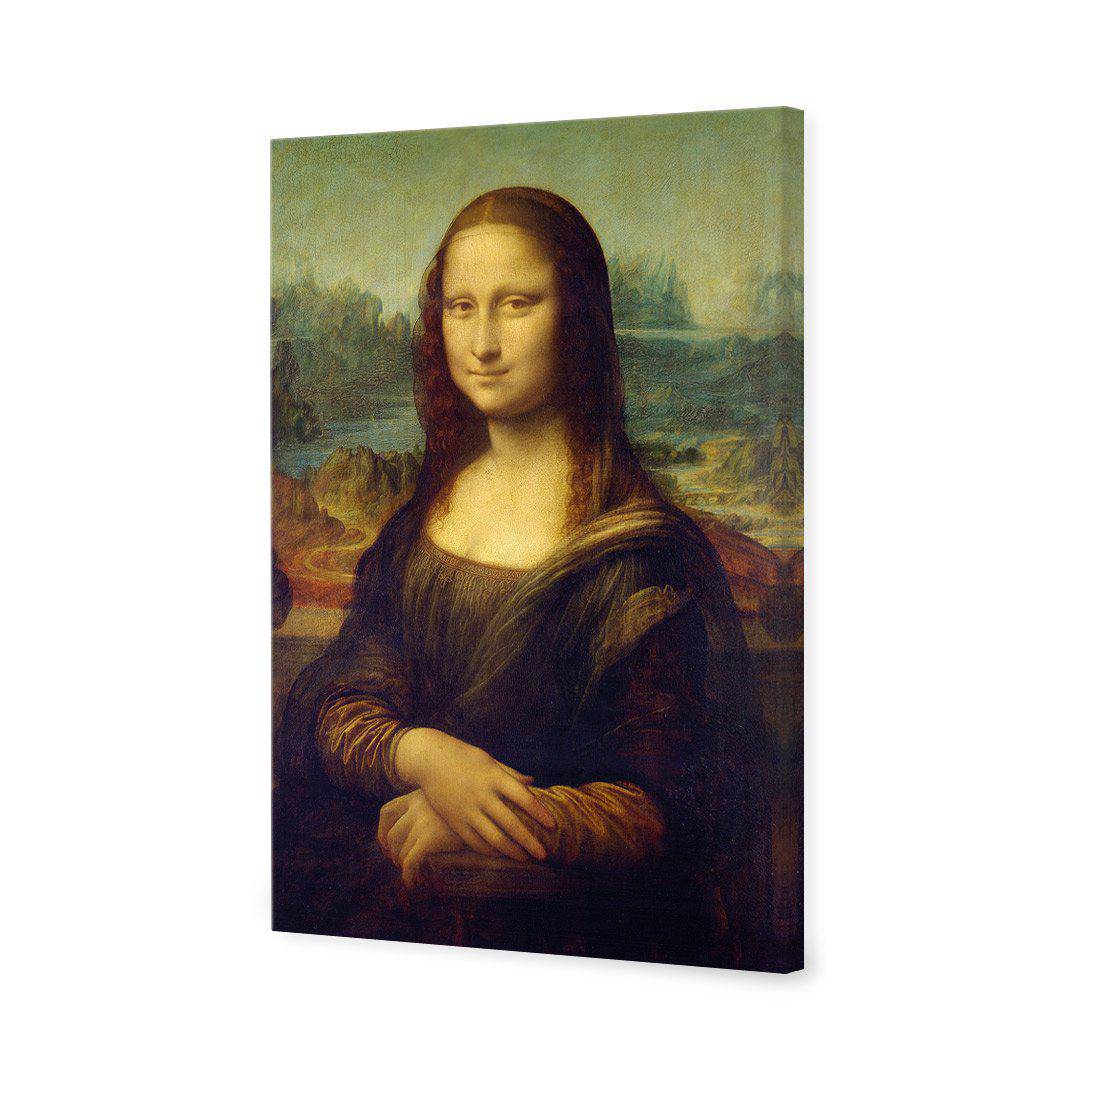 Mona Lisa - Da Vinci Canvas Art-Canvas-Wall Art Designs-45x30cm-Canvas - No Frame-Wall Art Designs